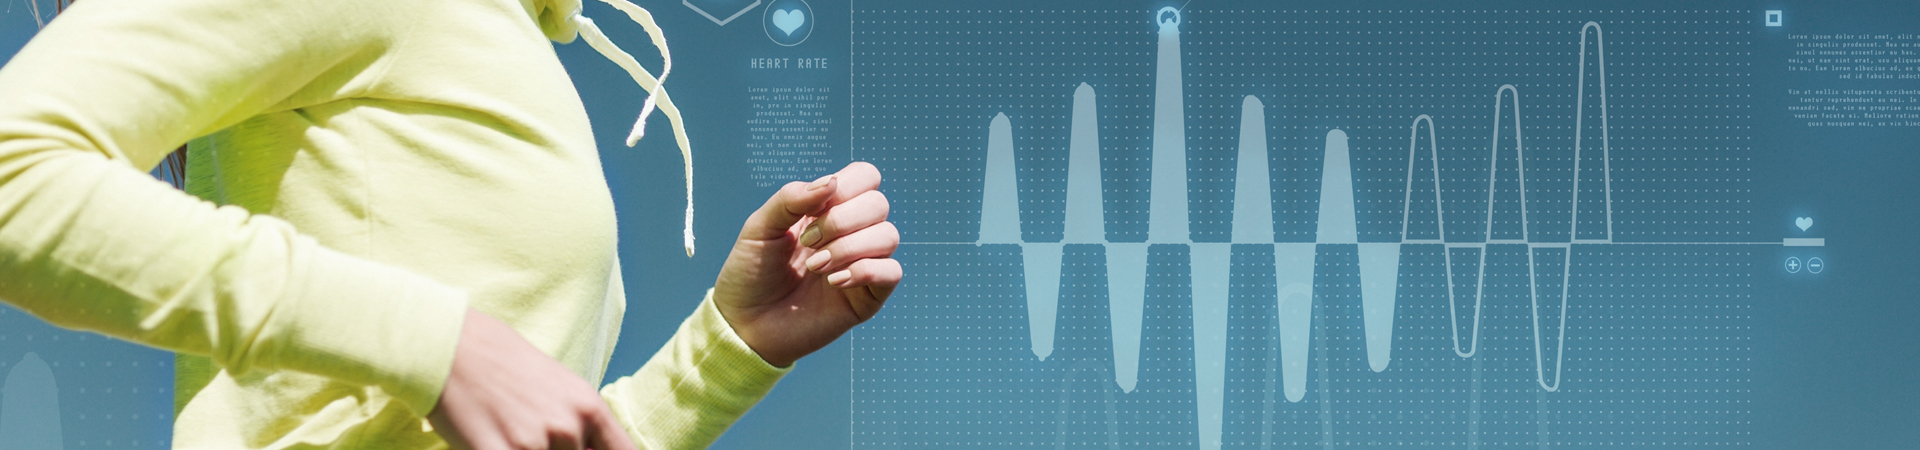 Entwicklung einer App zur Herzfrequenz-Kontrolle 